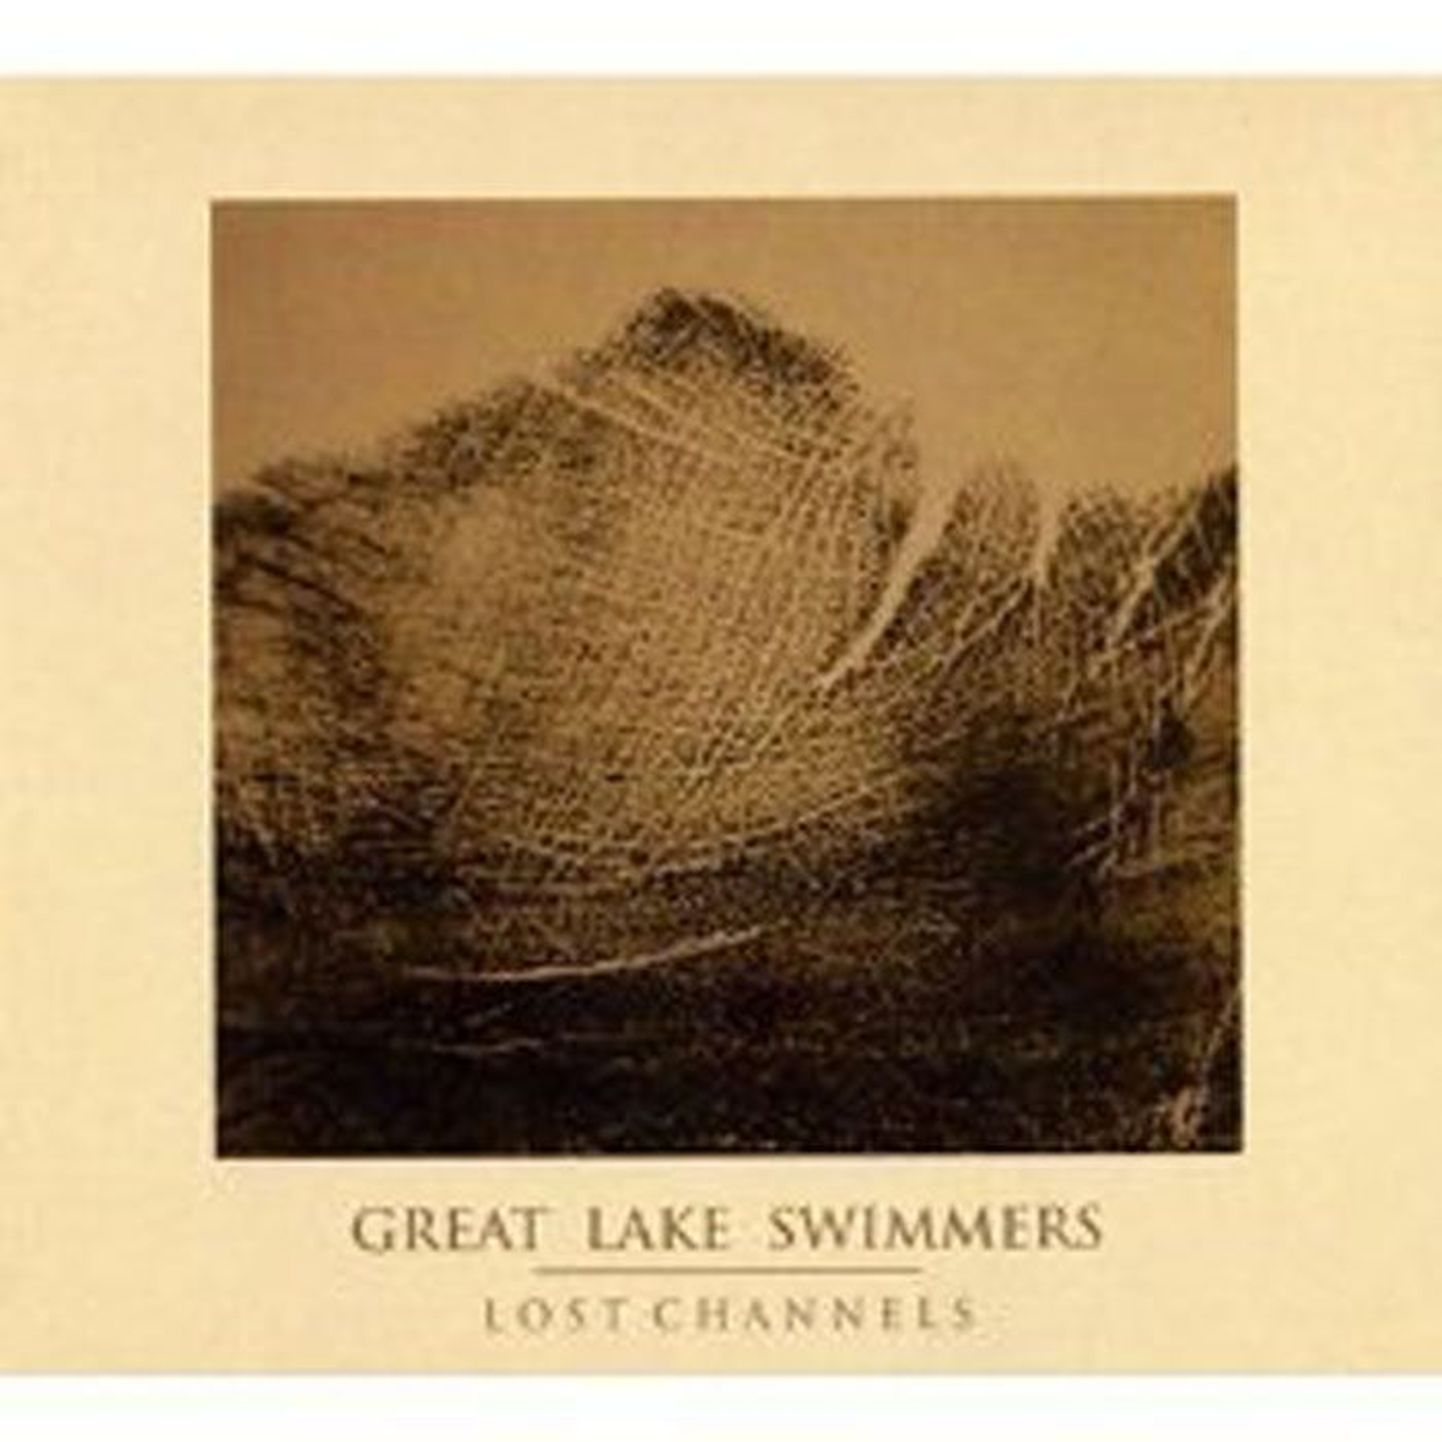 Great Lake Swimmers
Lost Channels (Nettwerk)